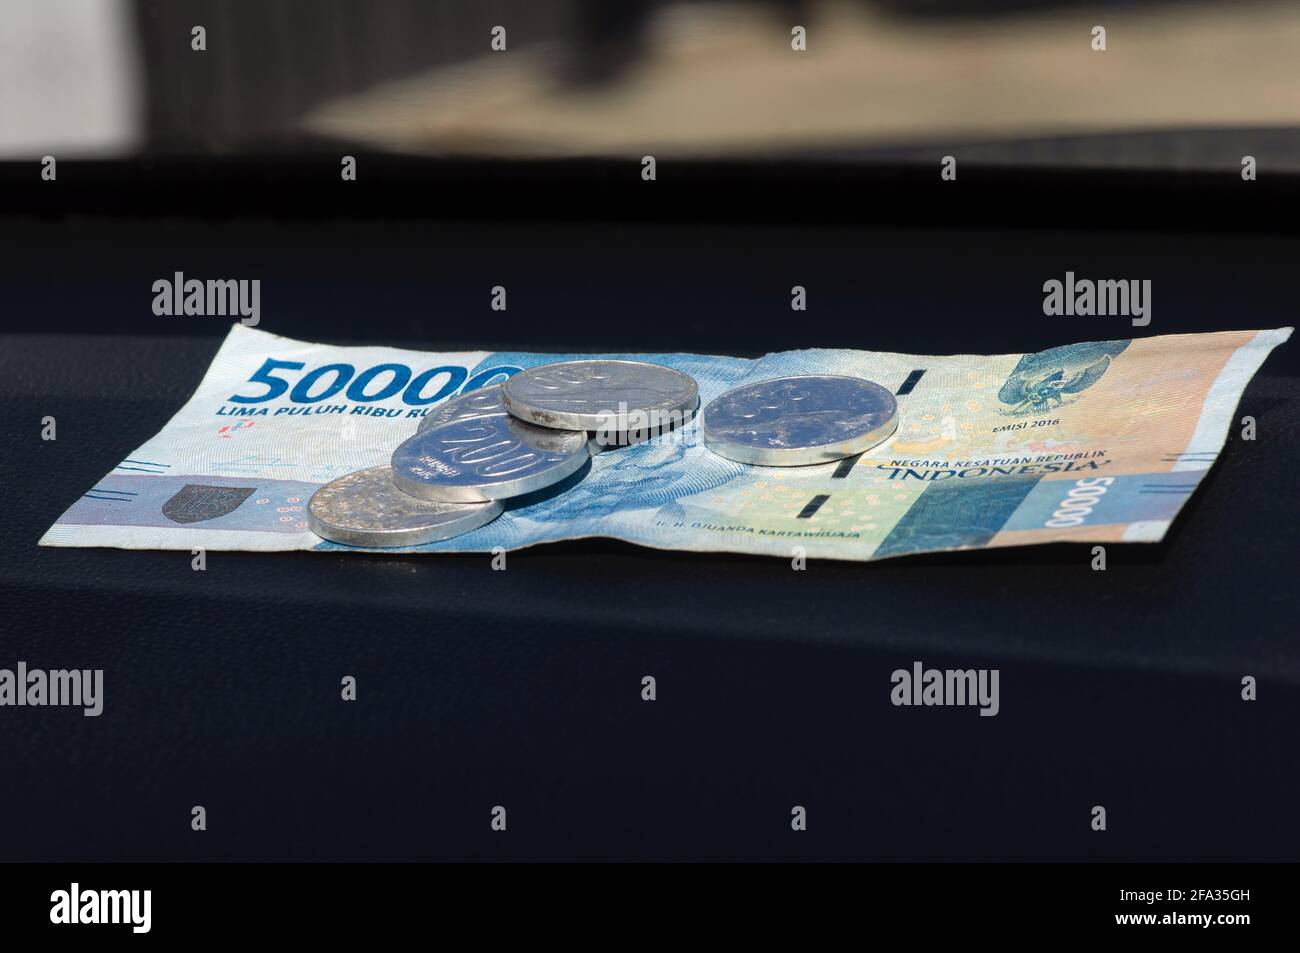 50000 Moneda indonesia de Rupiah y algunas monedas de Rupiah, sobre la mesa oscura Foto de stock